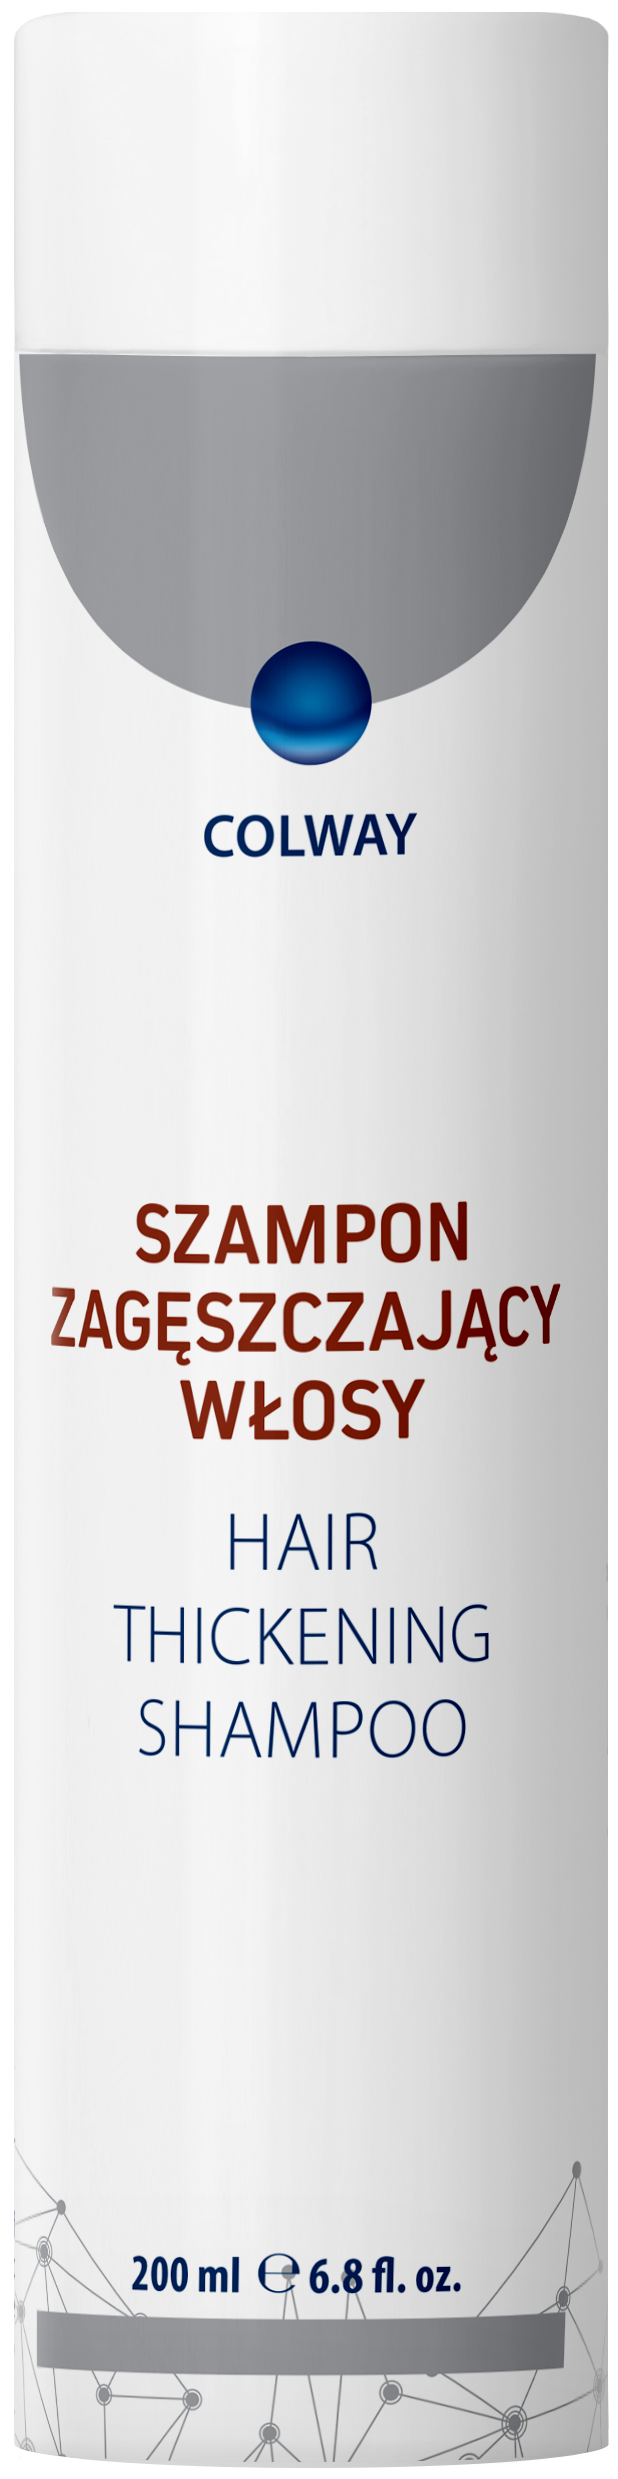 szampon zagęszczający włosy colway w apteka doz